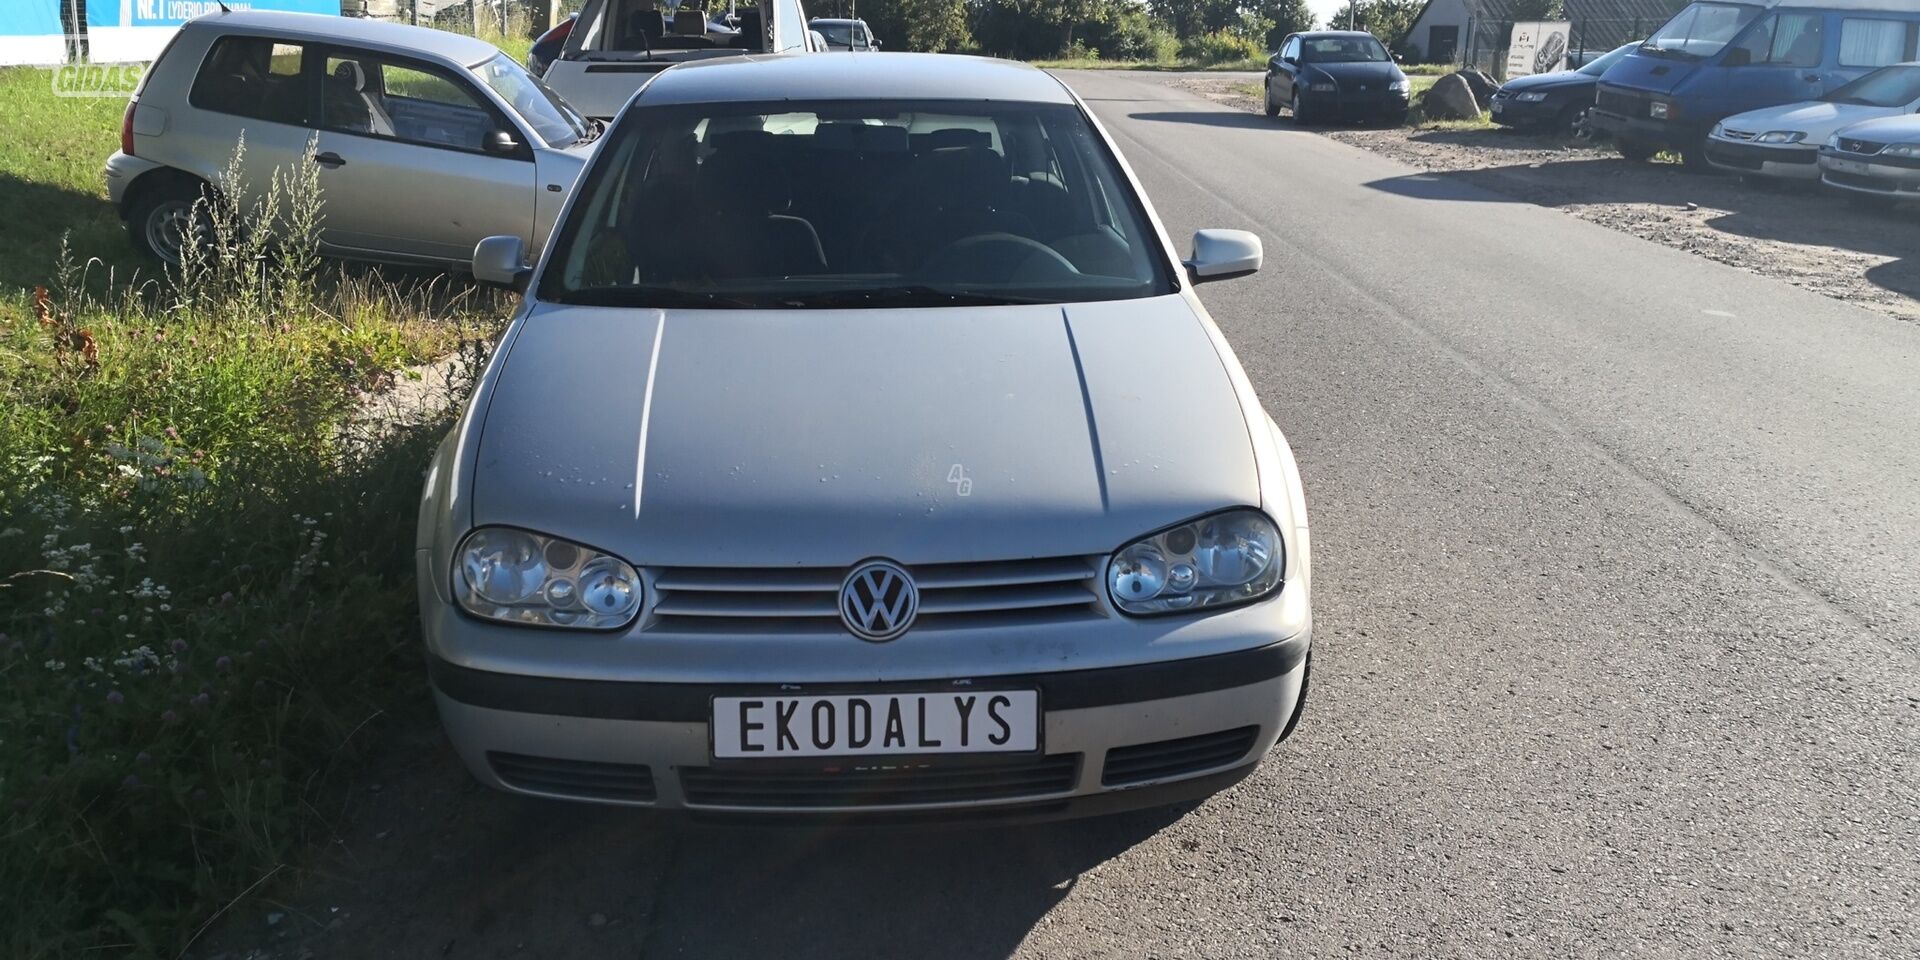 Volkswagen Golf 1998 m dalys